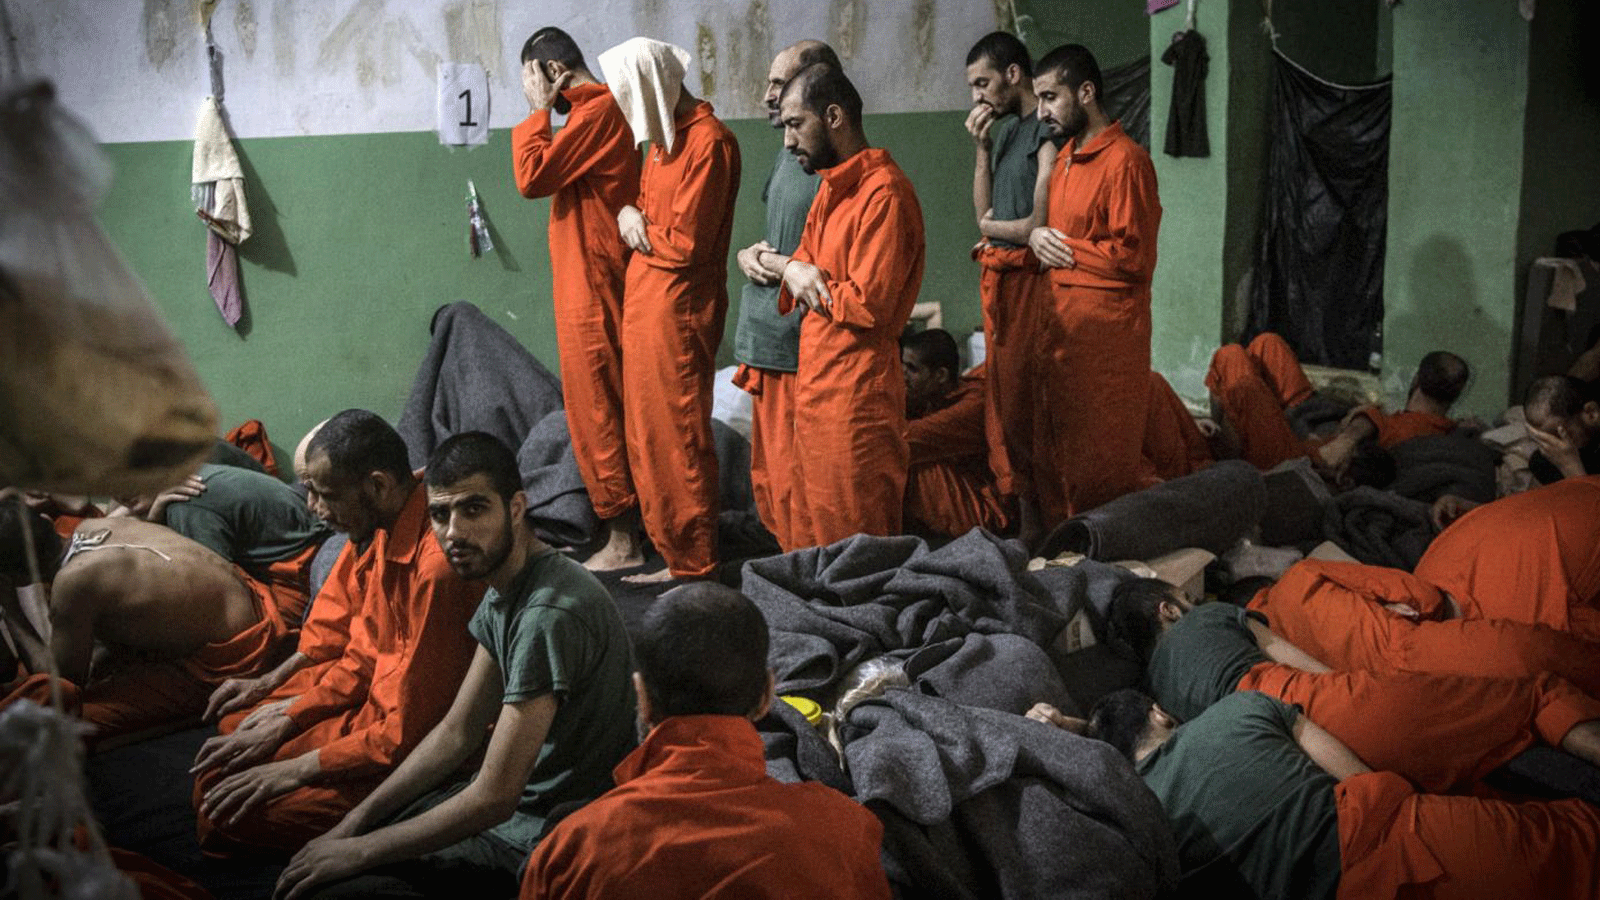  رجال يشتبه في انتمائهم لتنظيم الدولة الإسلامية يصلون في زنزانة بسجن سيناء بحي الغويران في الحسكة في 26 أكتوبر/ تشرين الأول 2019